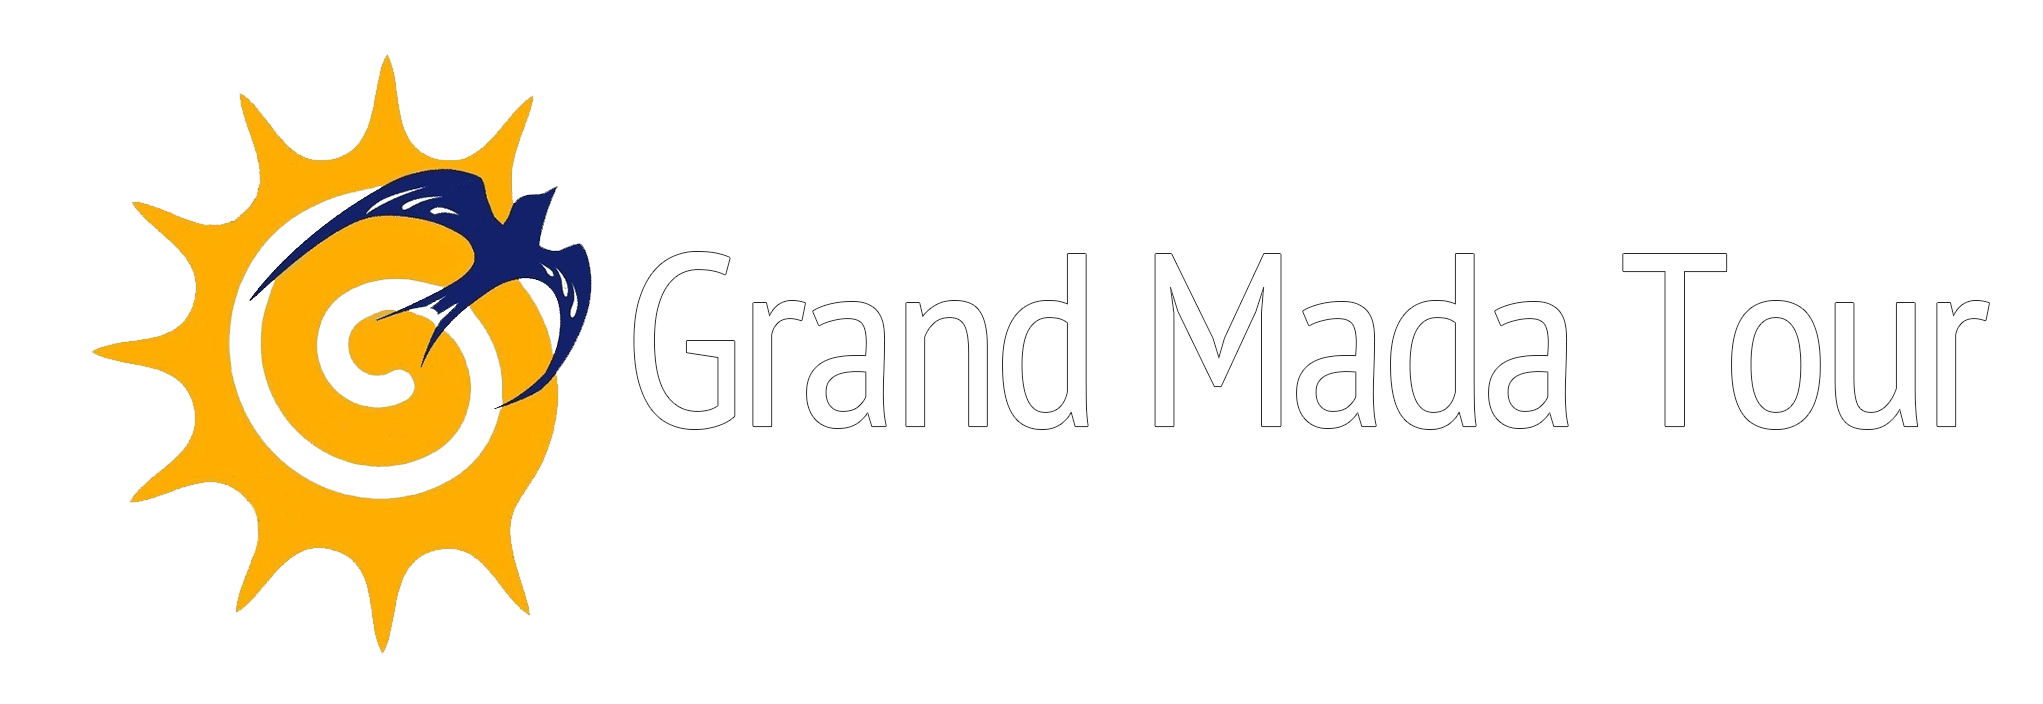 Grand Mada Tour